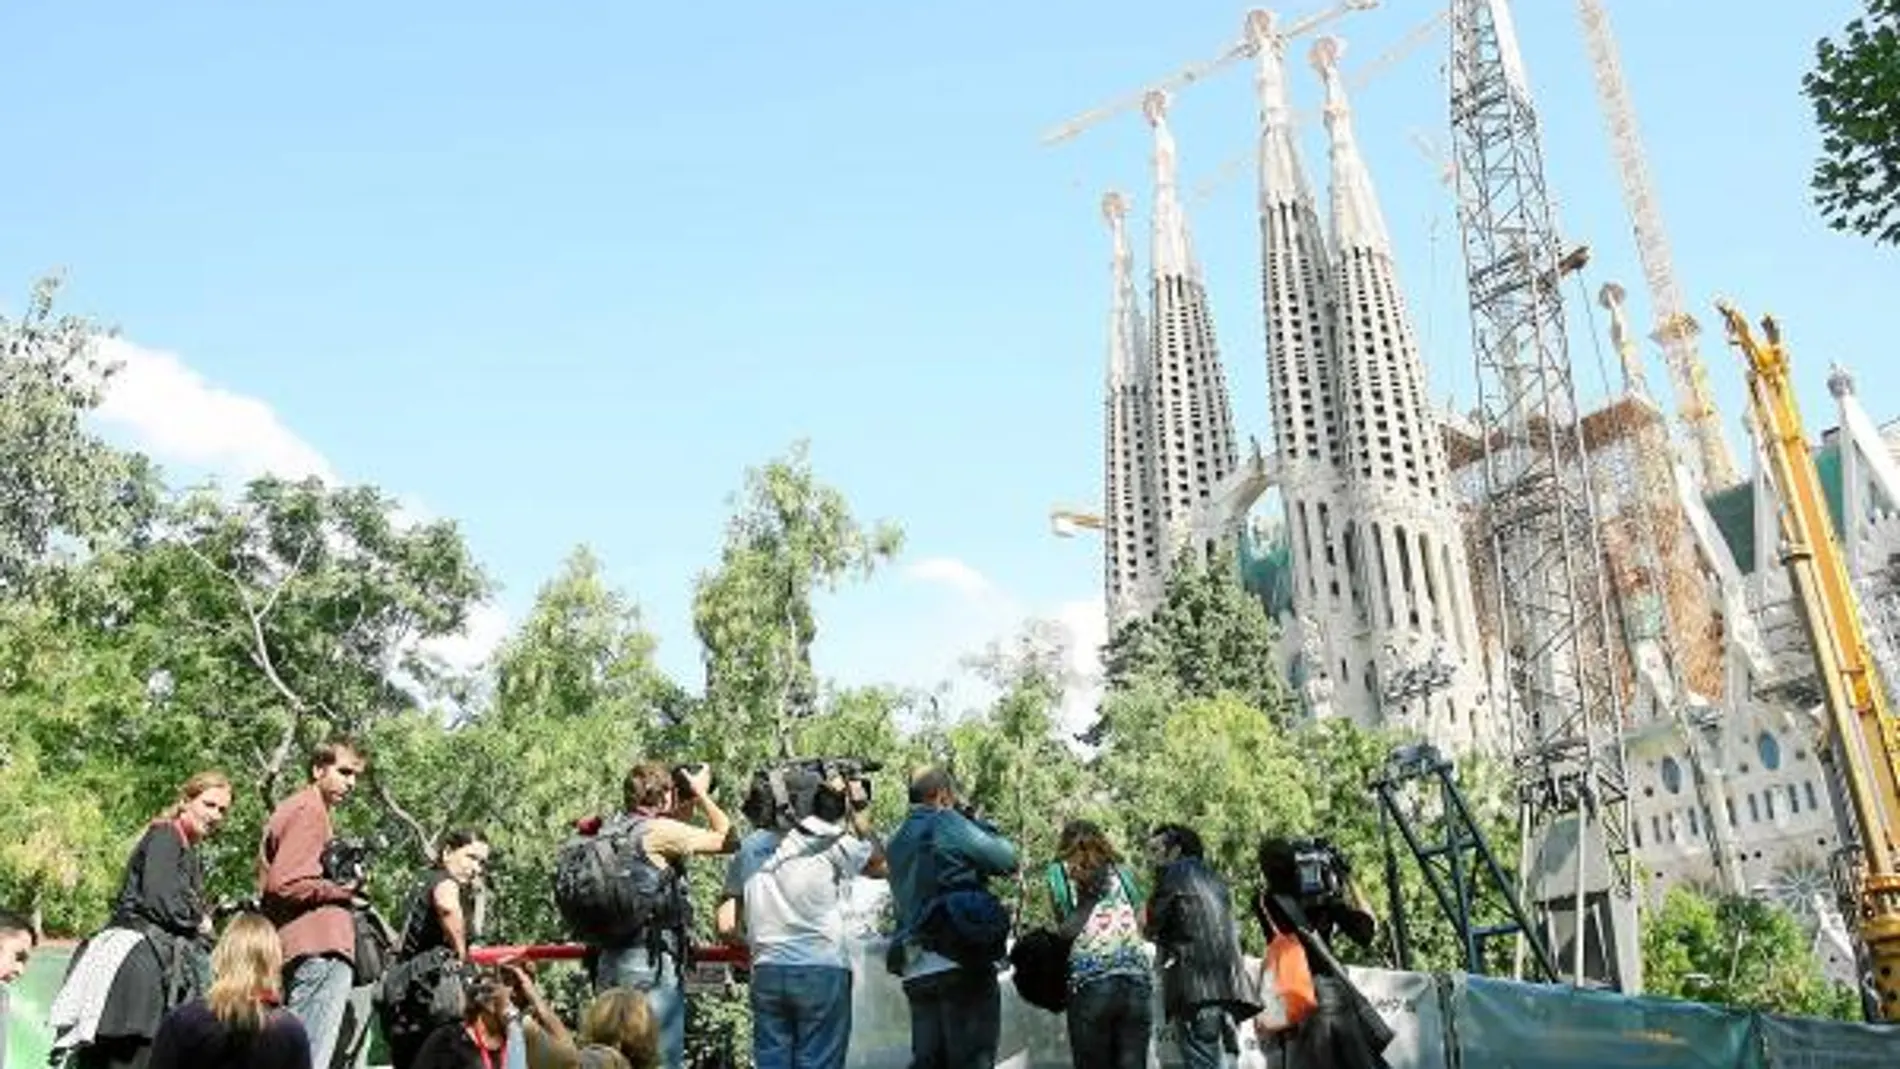 La Sagrada Familia es el monumento más conocido de la Ciudad Condal, una cita ineludible para los turistas